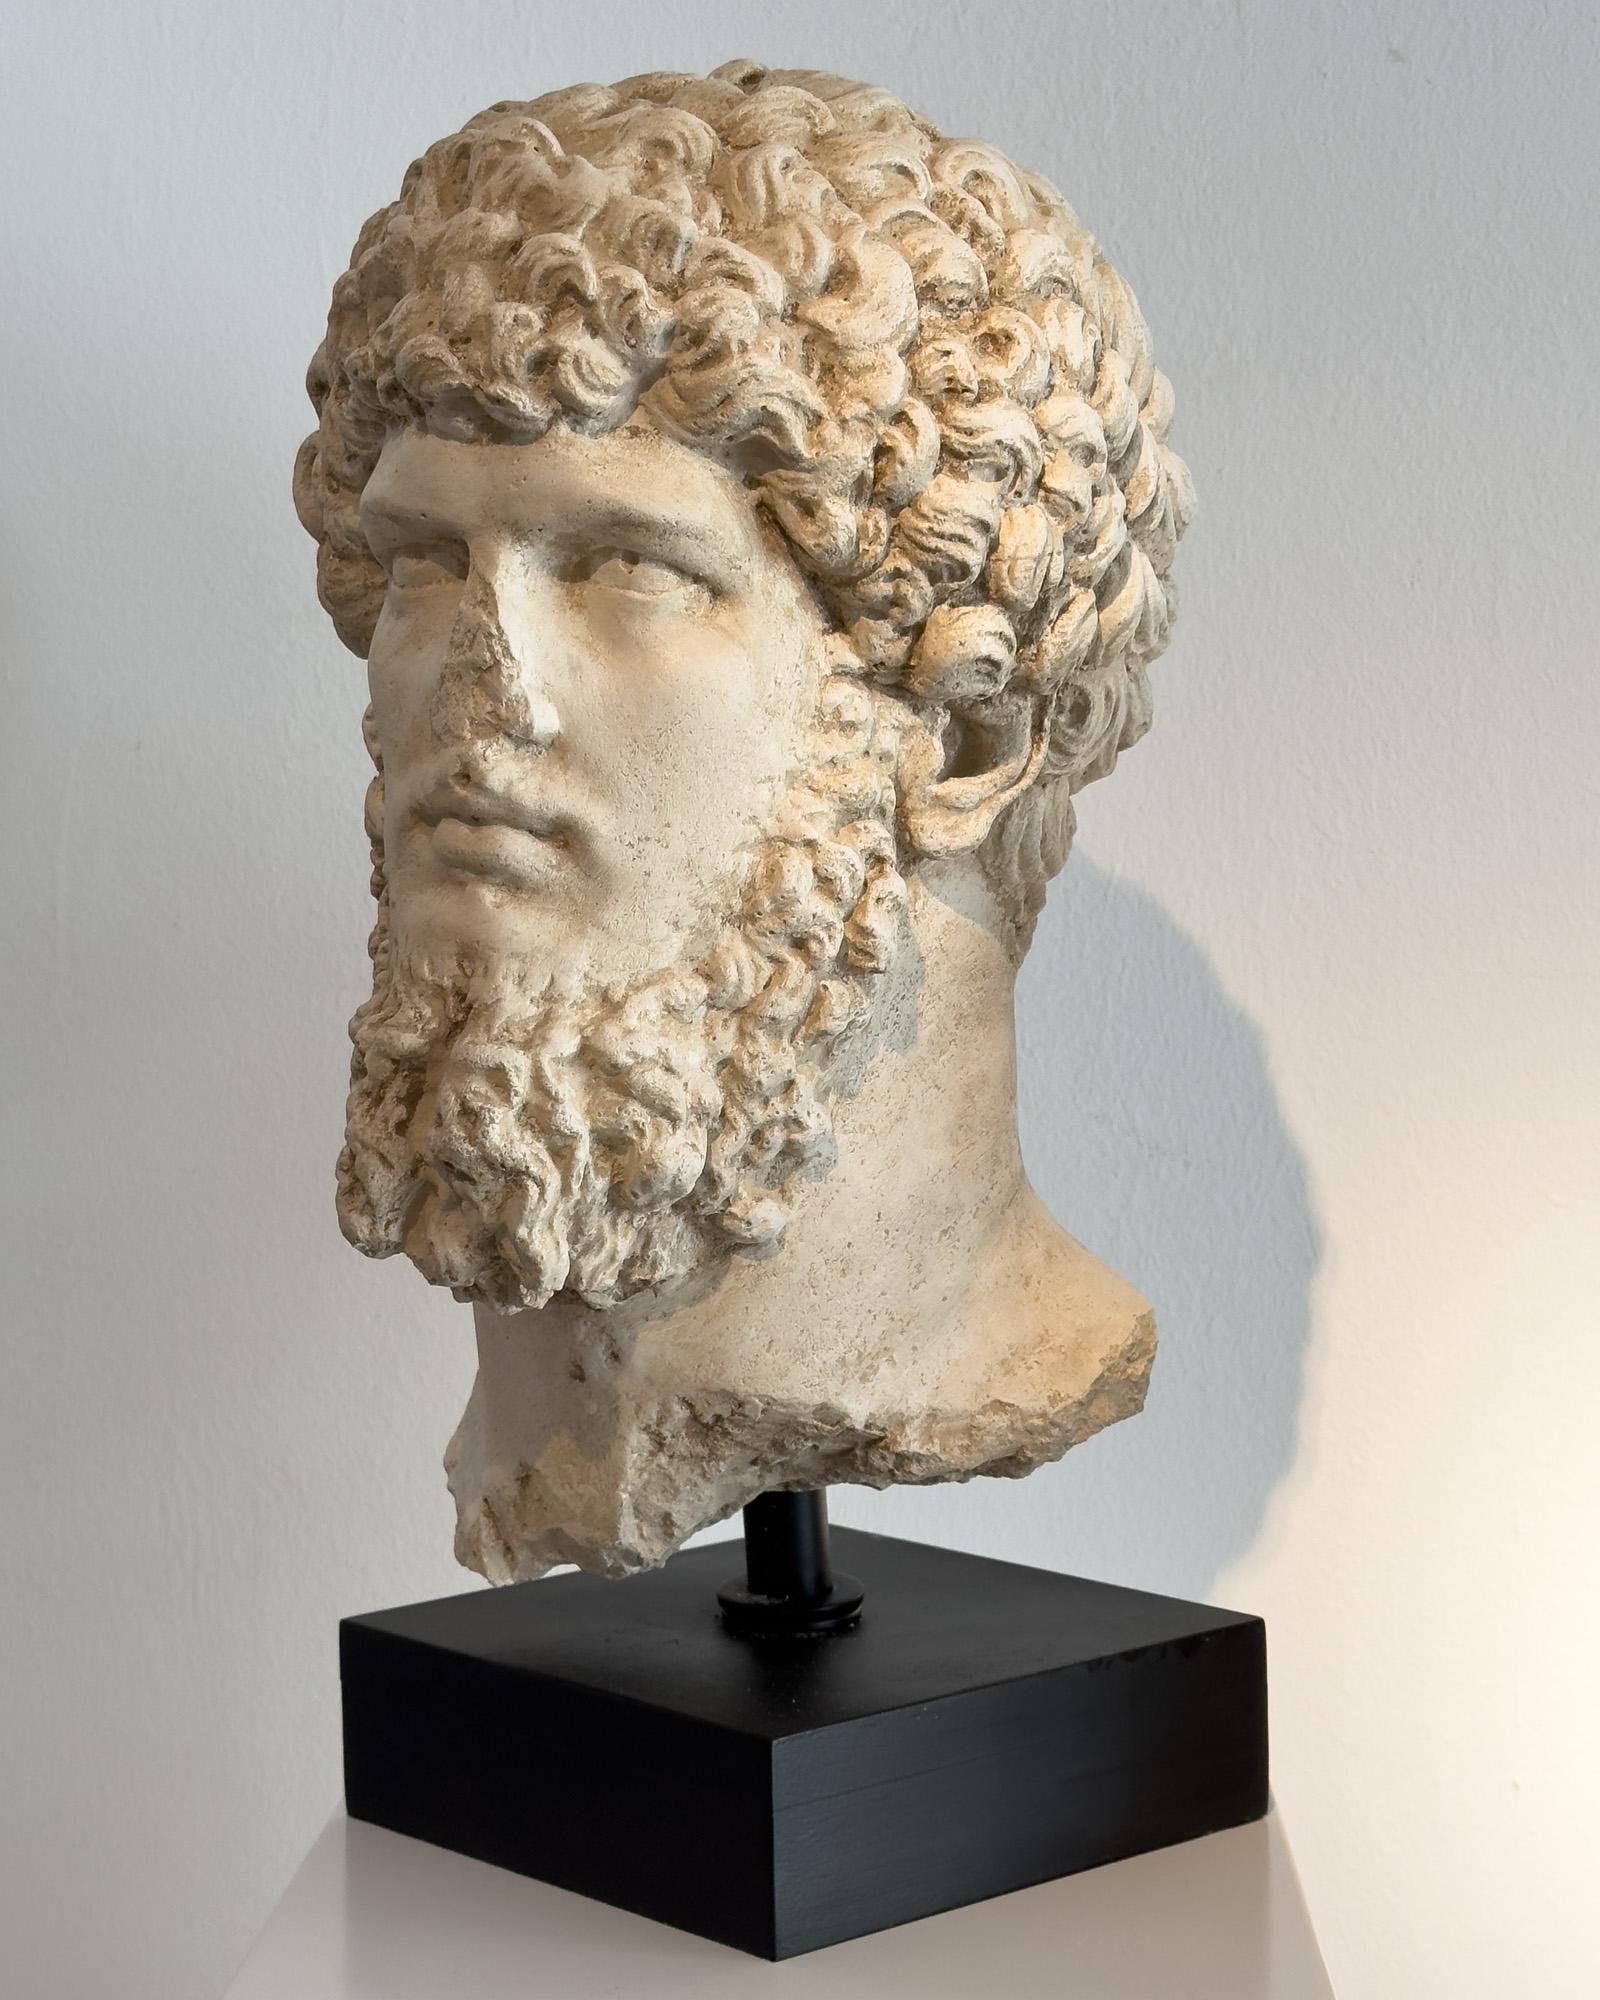 Büste des Lucius Venus aus geformtem und gehauenem Kalkstein nach Vorbildern aus dem klassischen Rom.

Er ist aus massivem Stein. Es ist Teil einer Serie von 8 Exemplaren, die ausschließlich von unserer Galerie vertrieben werden.
